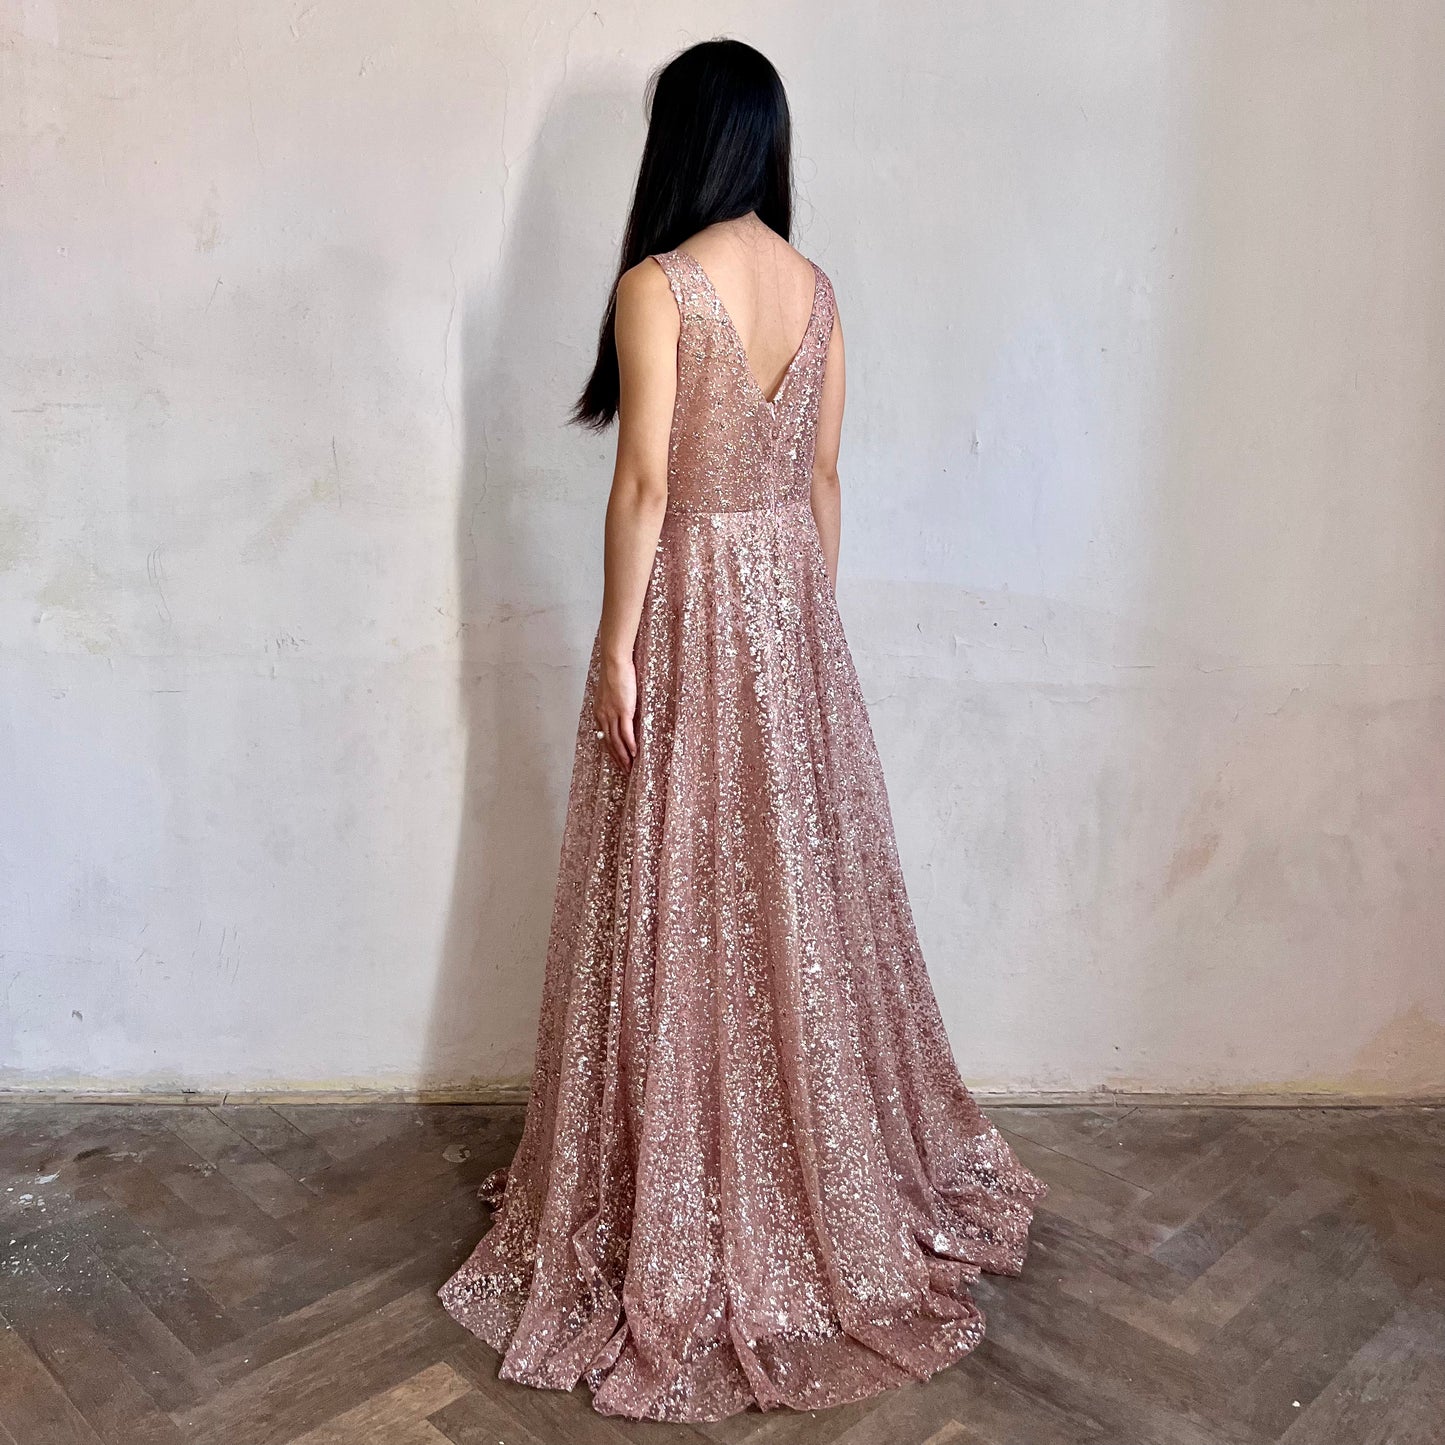 Modelka asijského původu pózující z boku oblečená ve světle růžových třpytivých společenských šatech